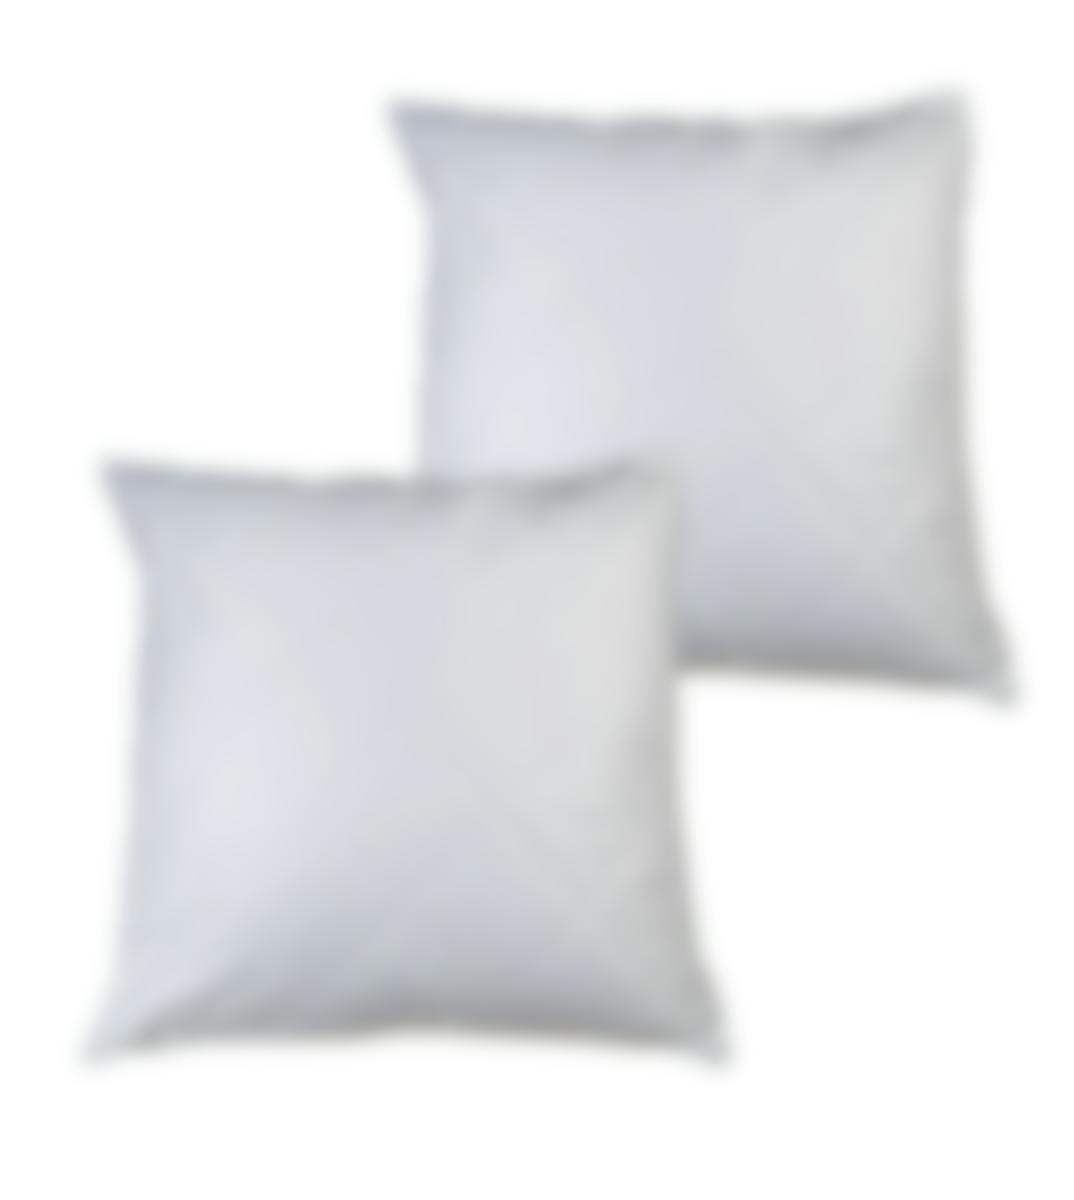 Bonnanotte protège-oreiller matelassé coton set de 2